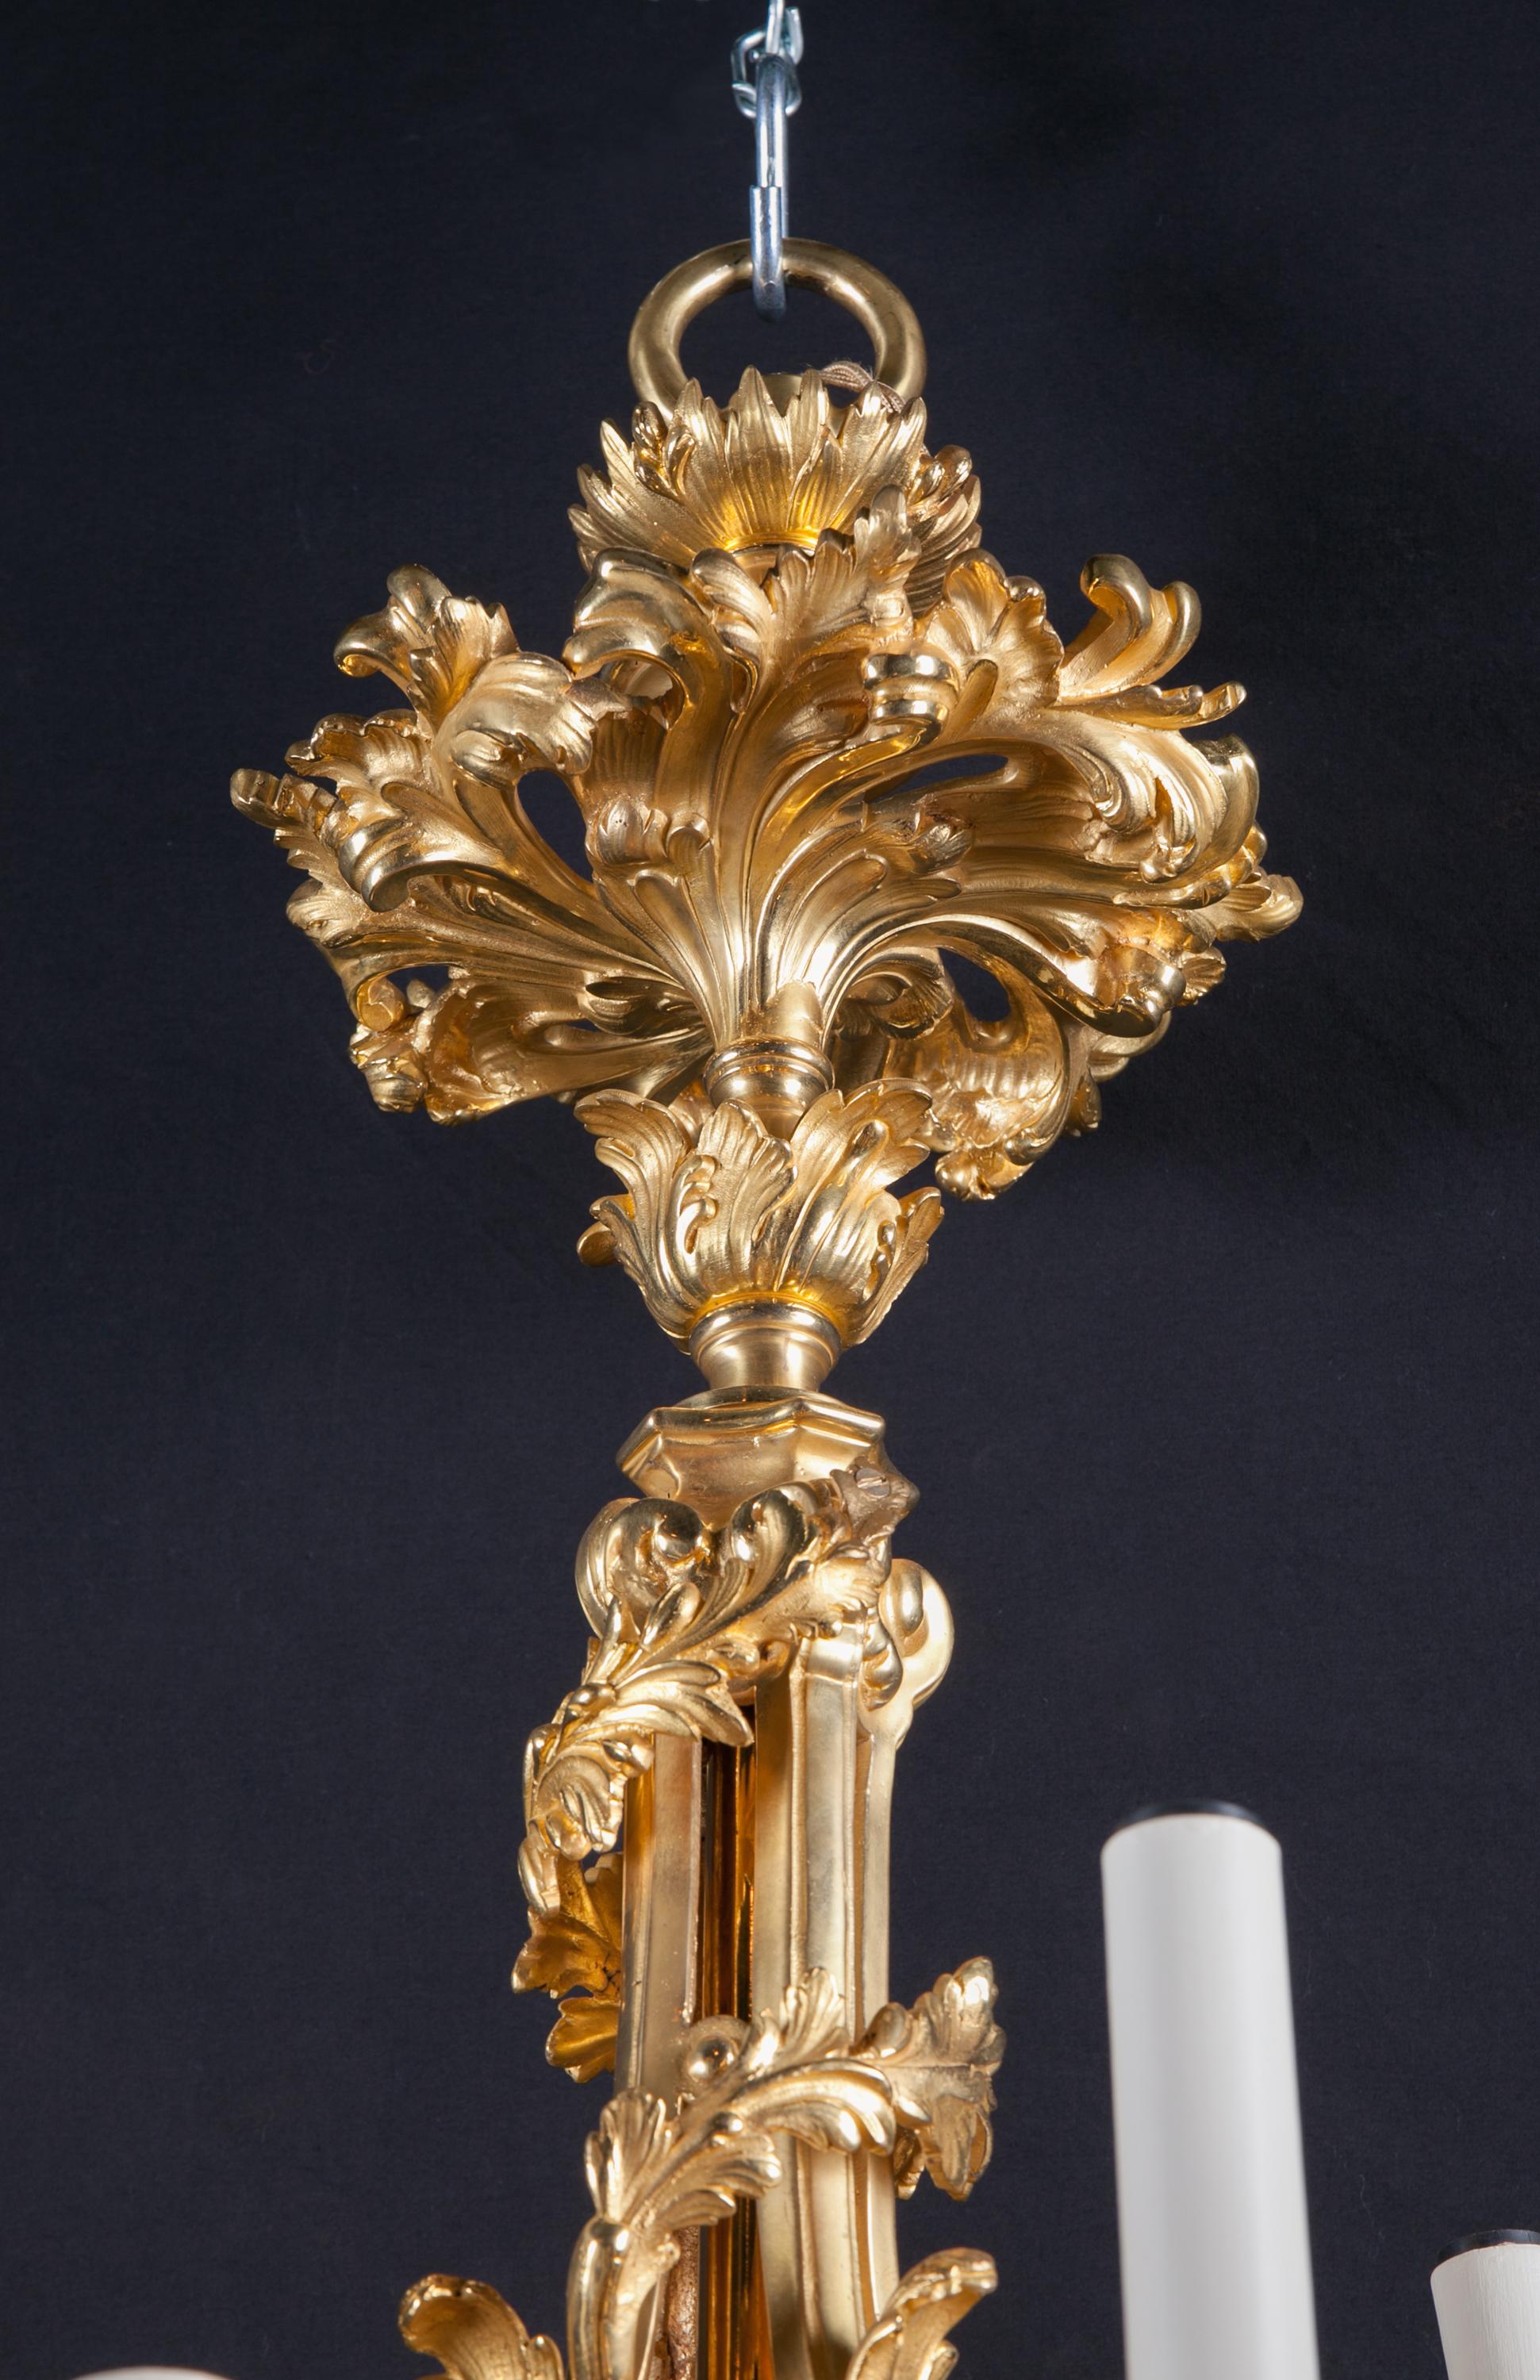 Bronze D’ore Chandelier / Gasolier with Fleur De Lis Keys, French 19th Century  For Sale 1